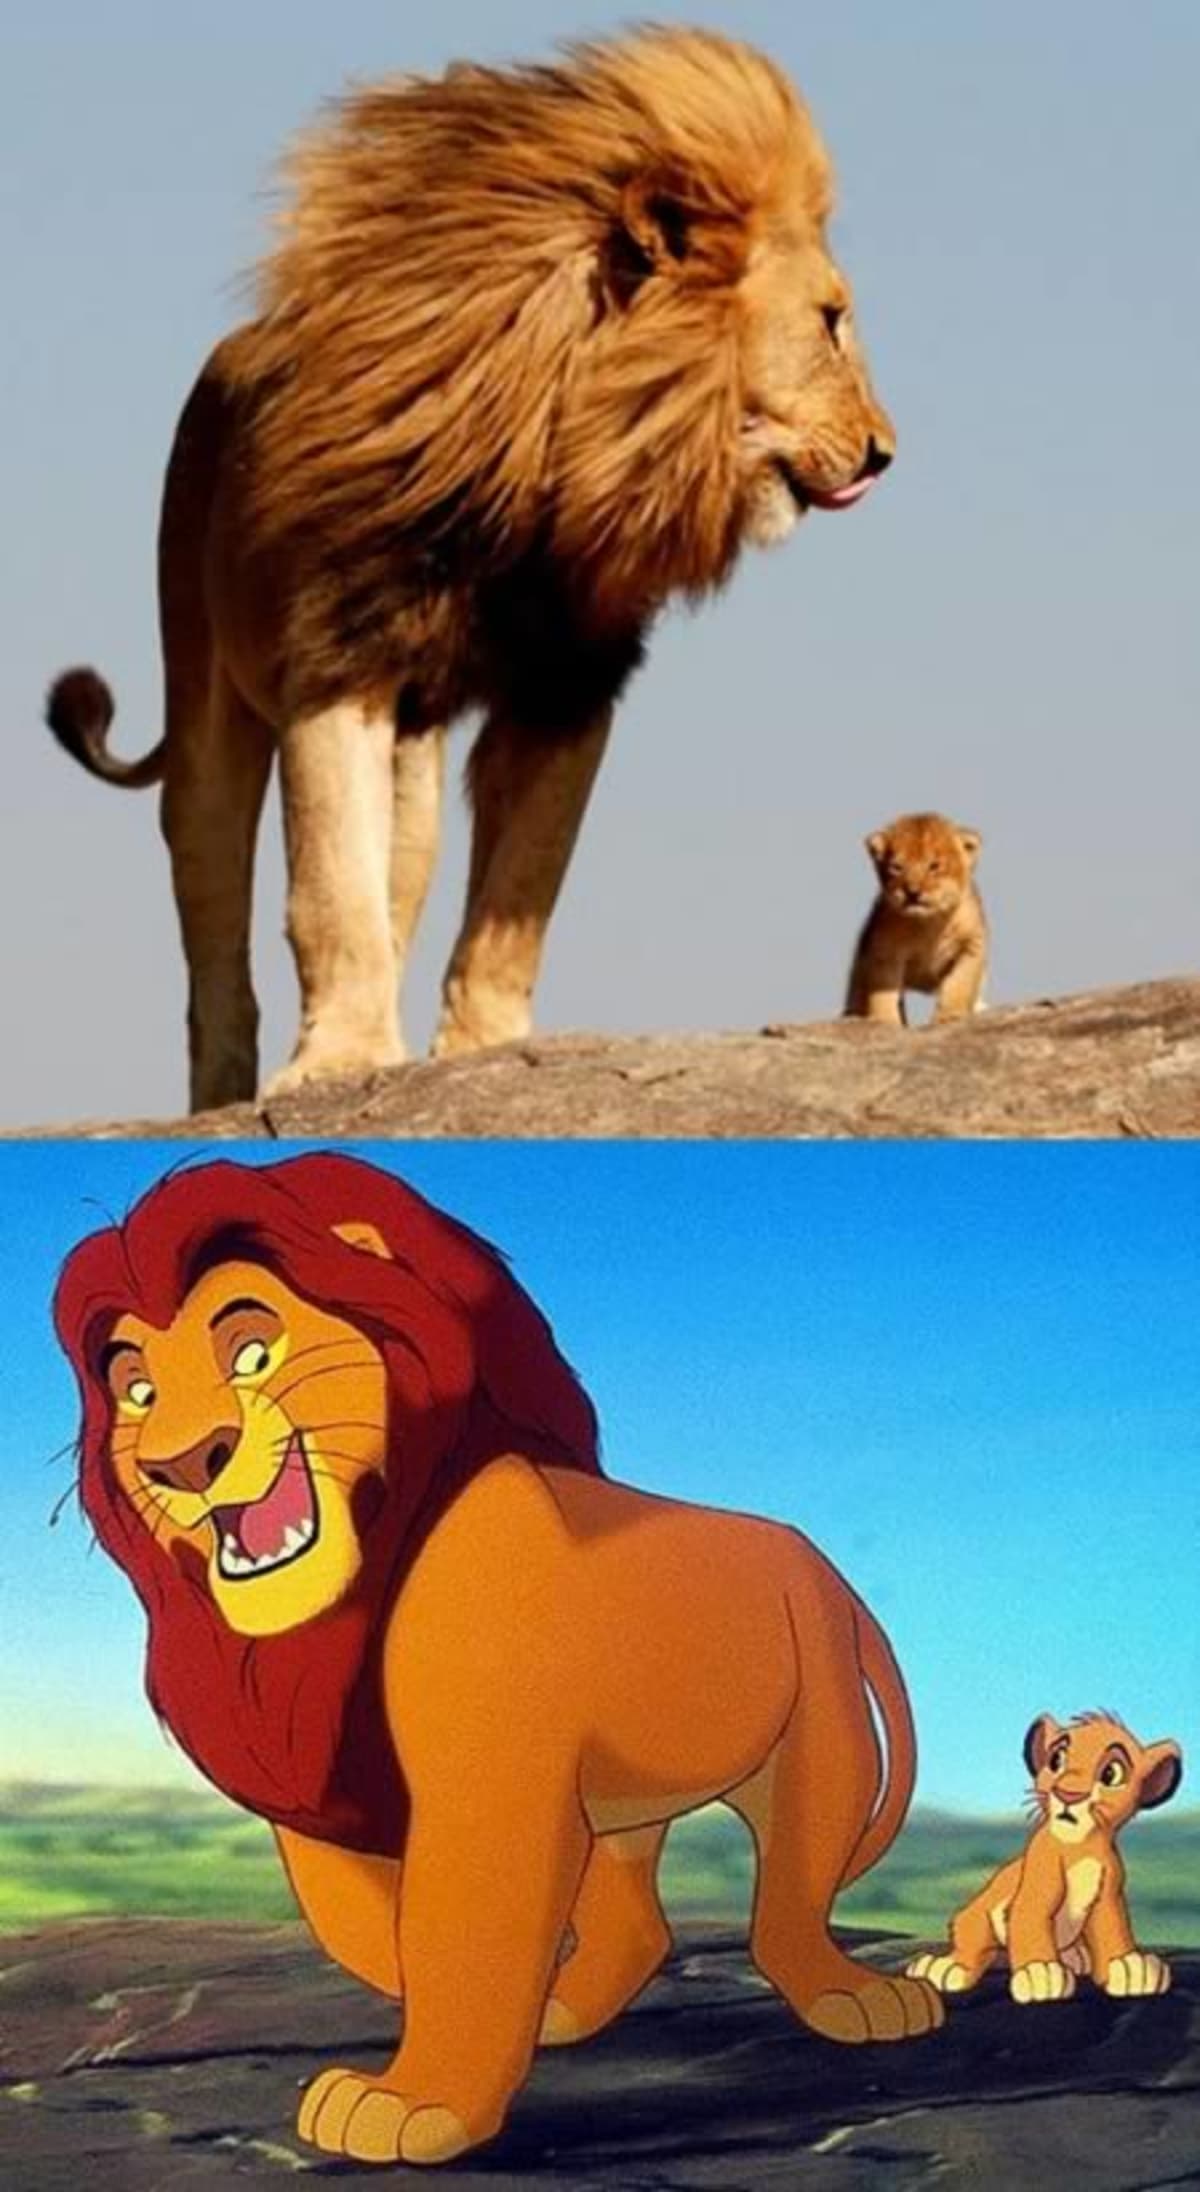 A teď do světa zvířat...dvojníky má i Lví král.